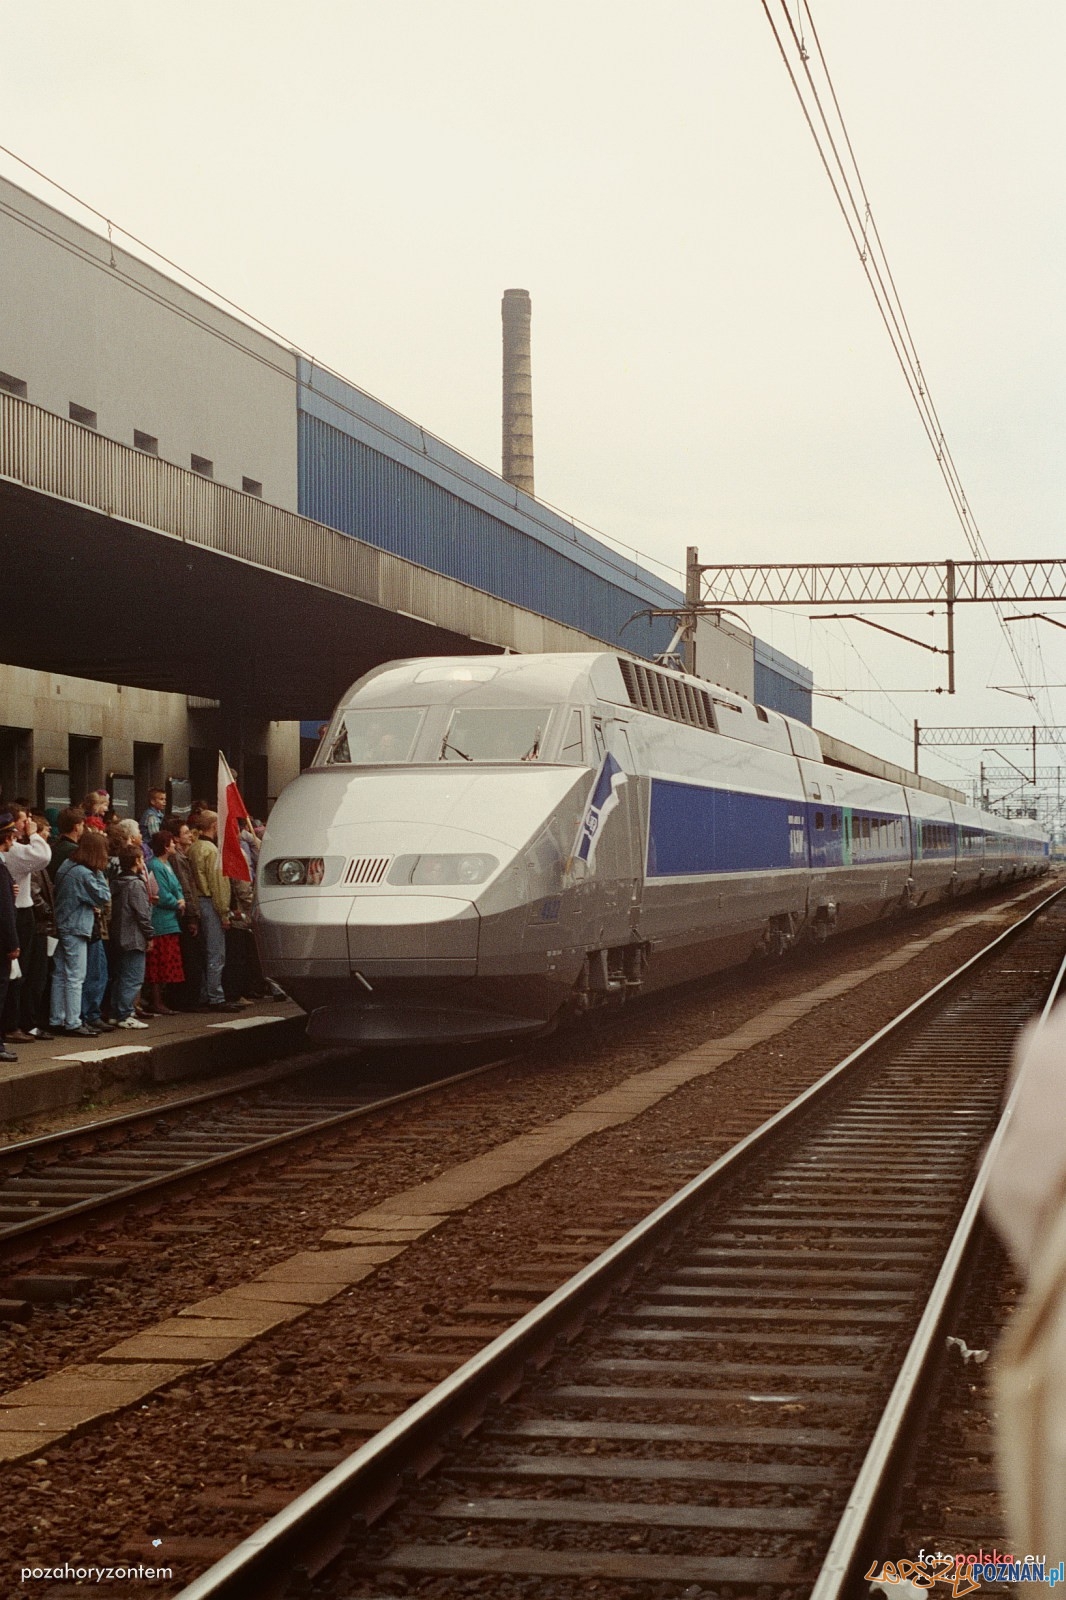 TGV na stacji Poznań Głowny - 18.06.1995  Foto: Przemysław Górski / pozahoryzontem / fotopolska.eu